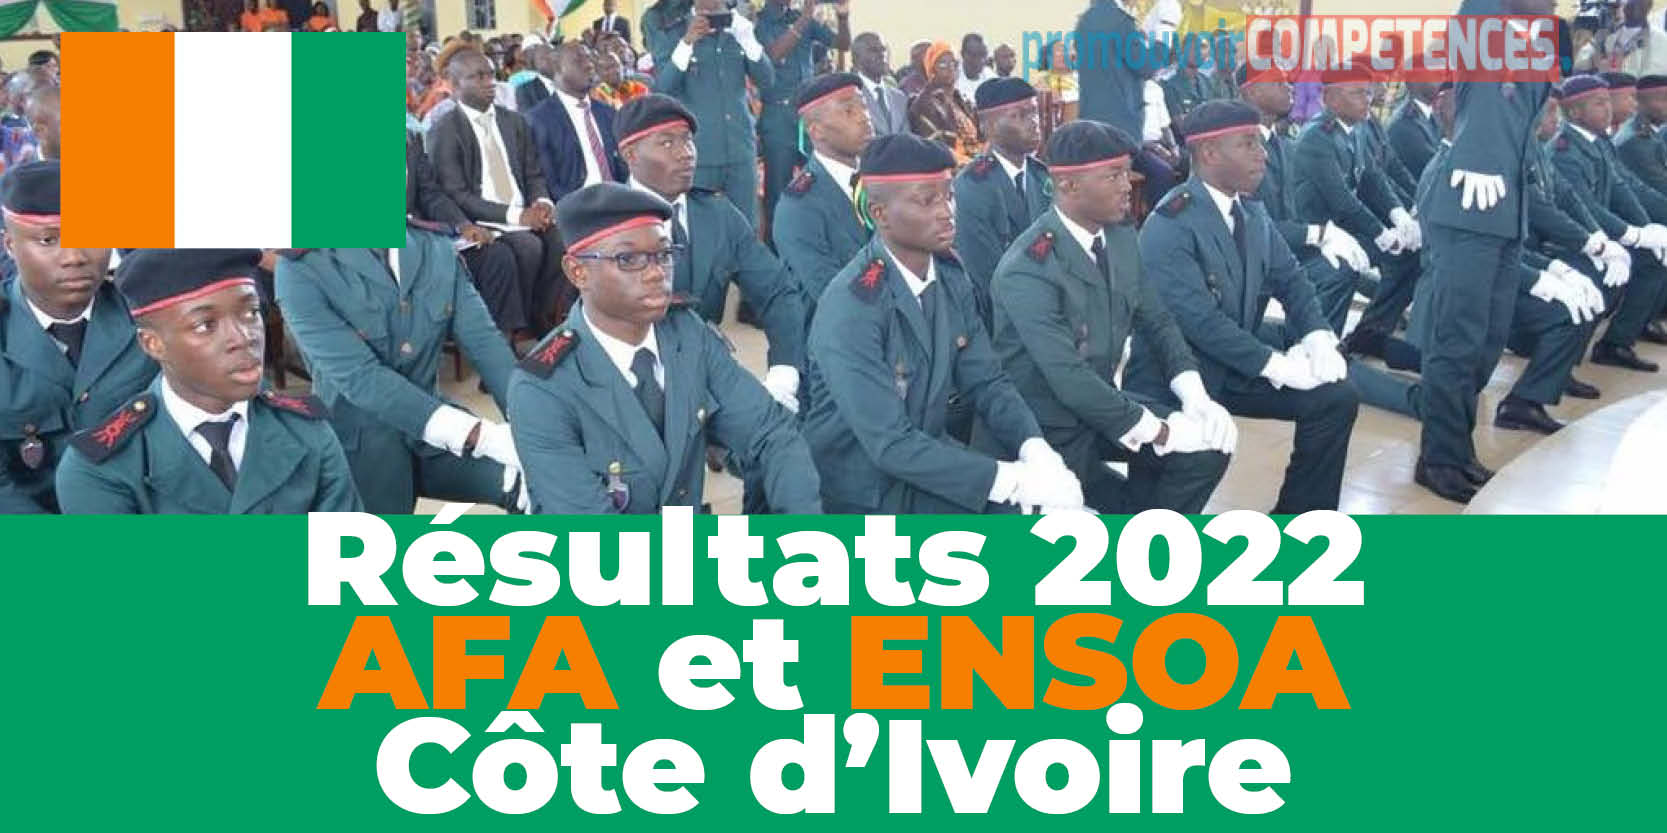 Tous les résultats des admissibilités au Concours AFA et ENSOA 2022 - Côte d'Ivoire